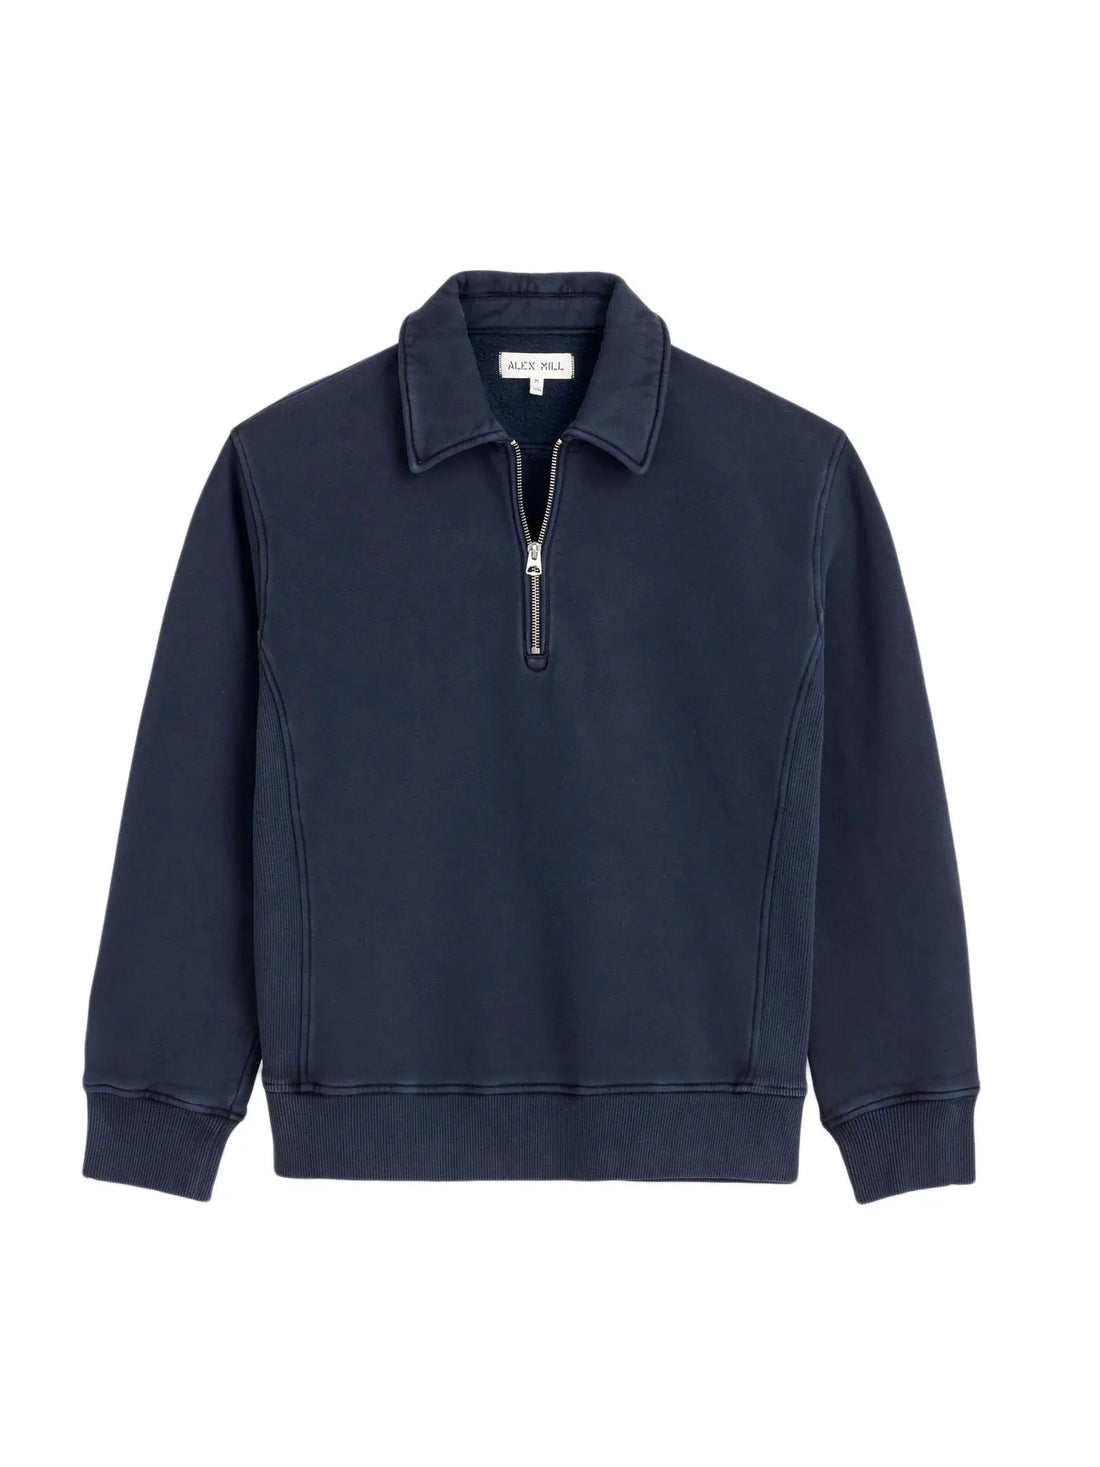 Som Half Zip Sweatshirt in Fleece- Navy - Eames NW